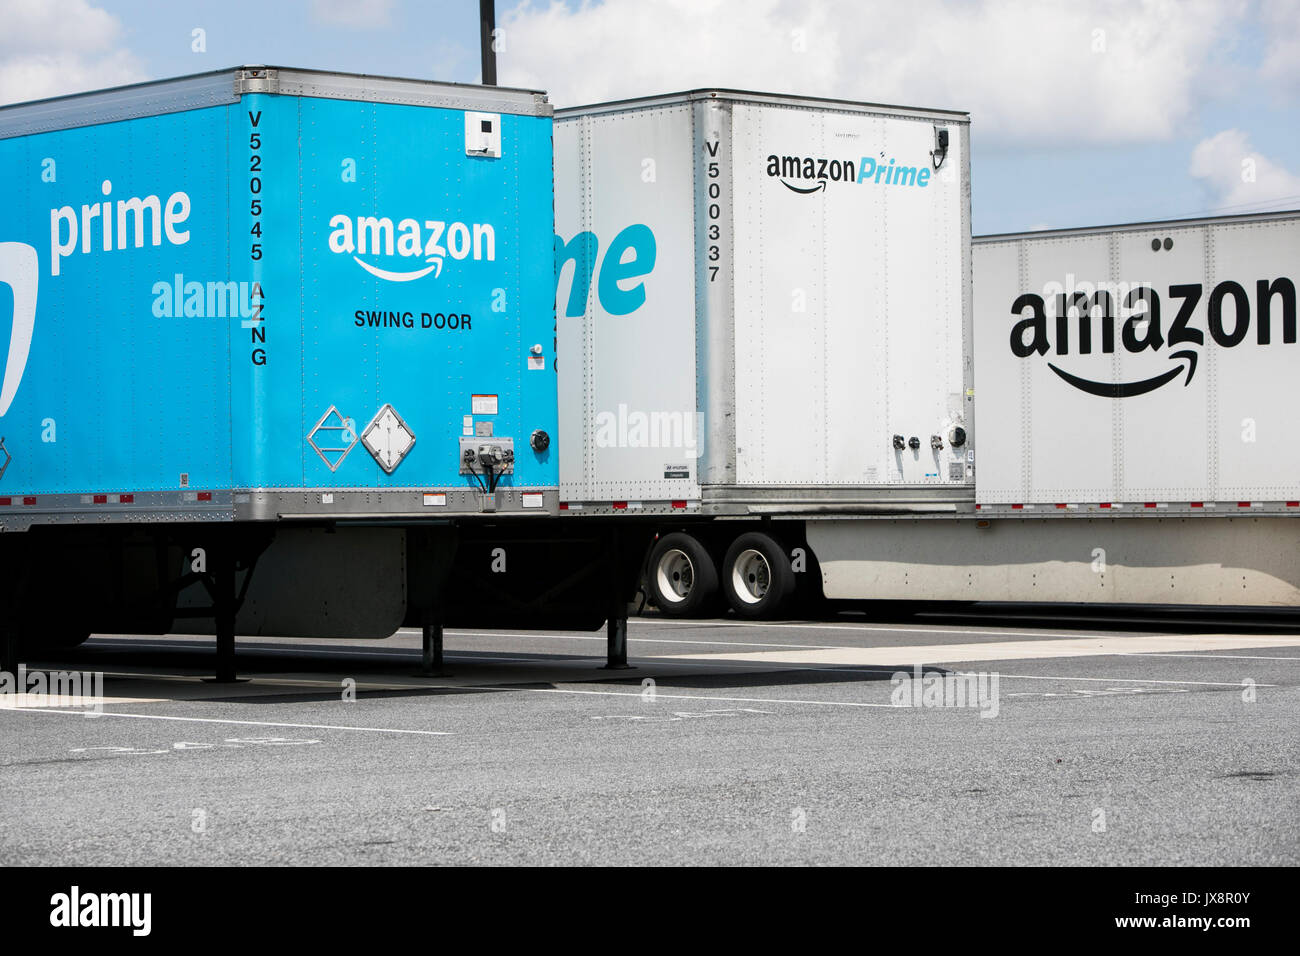 Amazon Prime LKW-Anhänger außerhalb eines Amazon Fulfillment Center in  Baltimore, Maryland, am 13. August 2017 Stockfotografie - Alamy